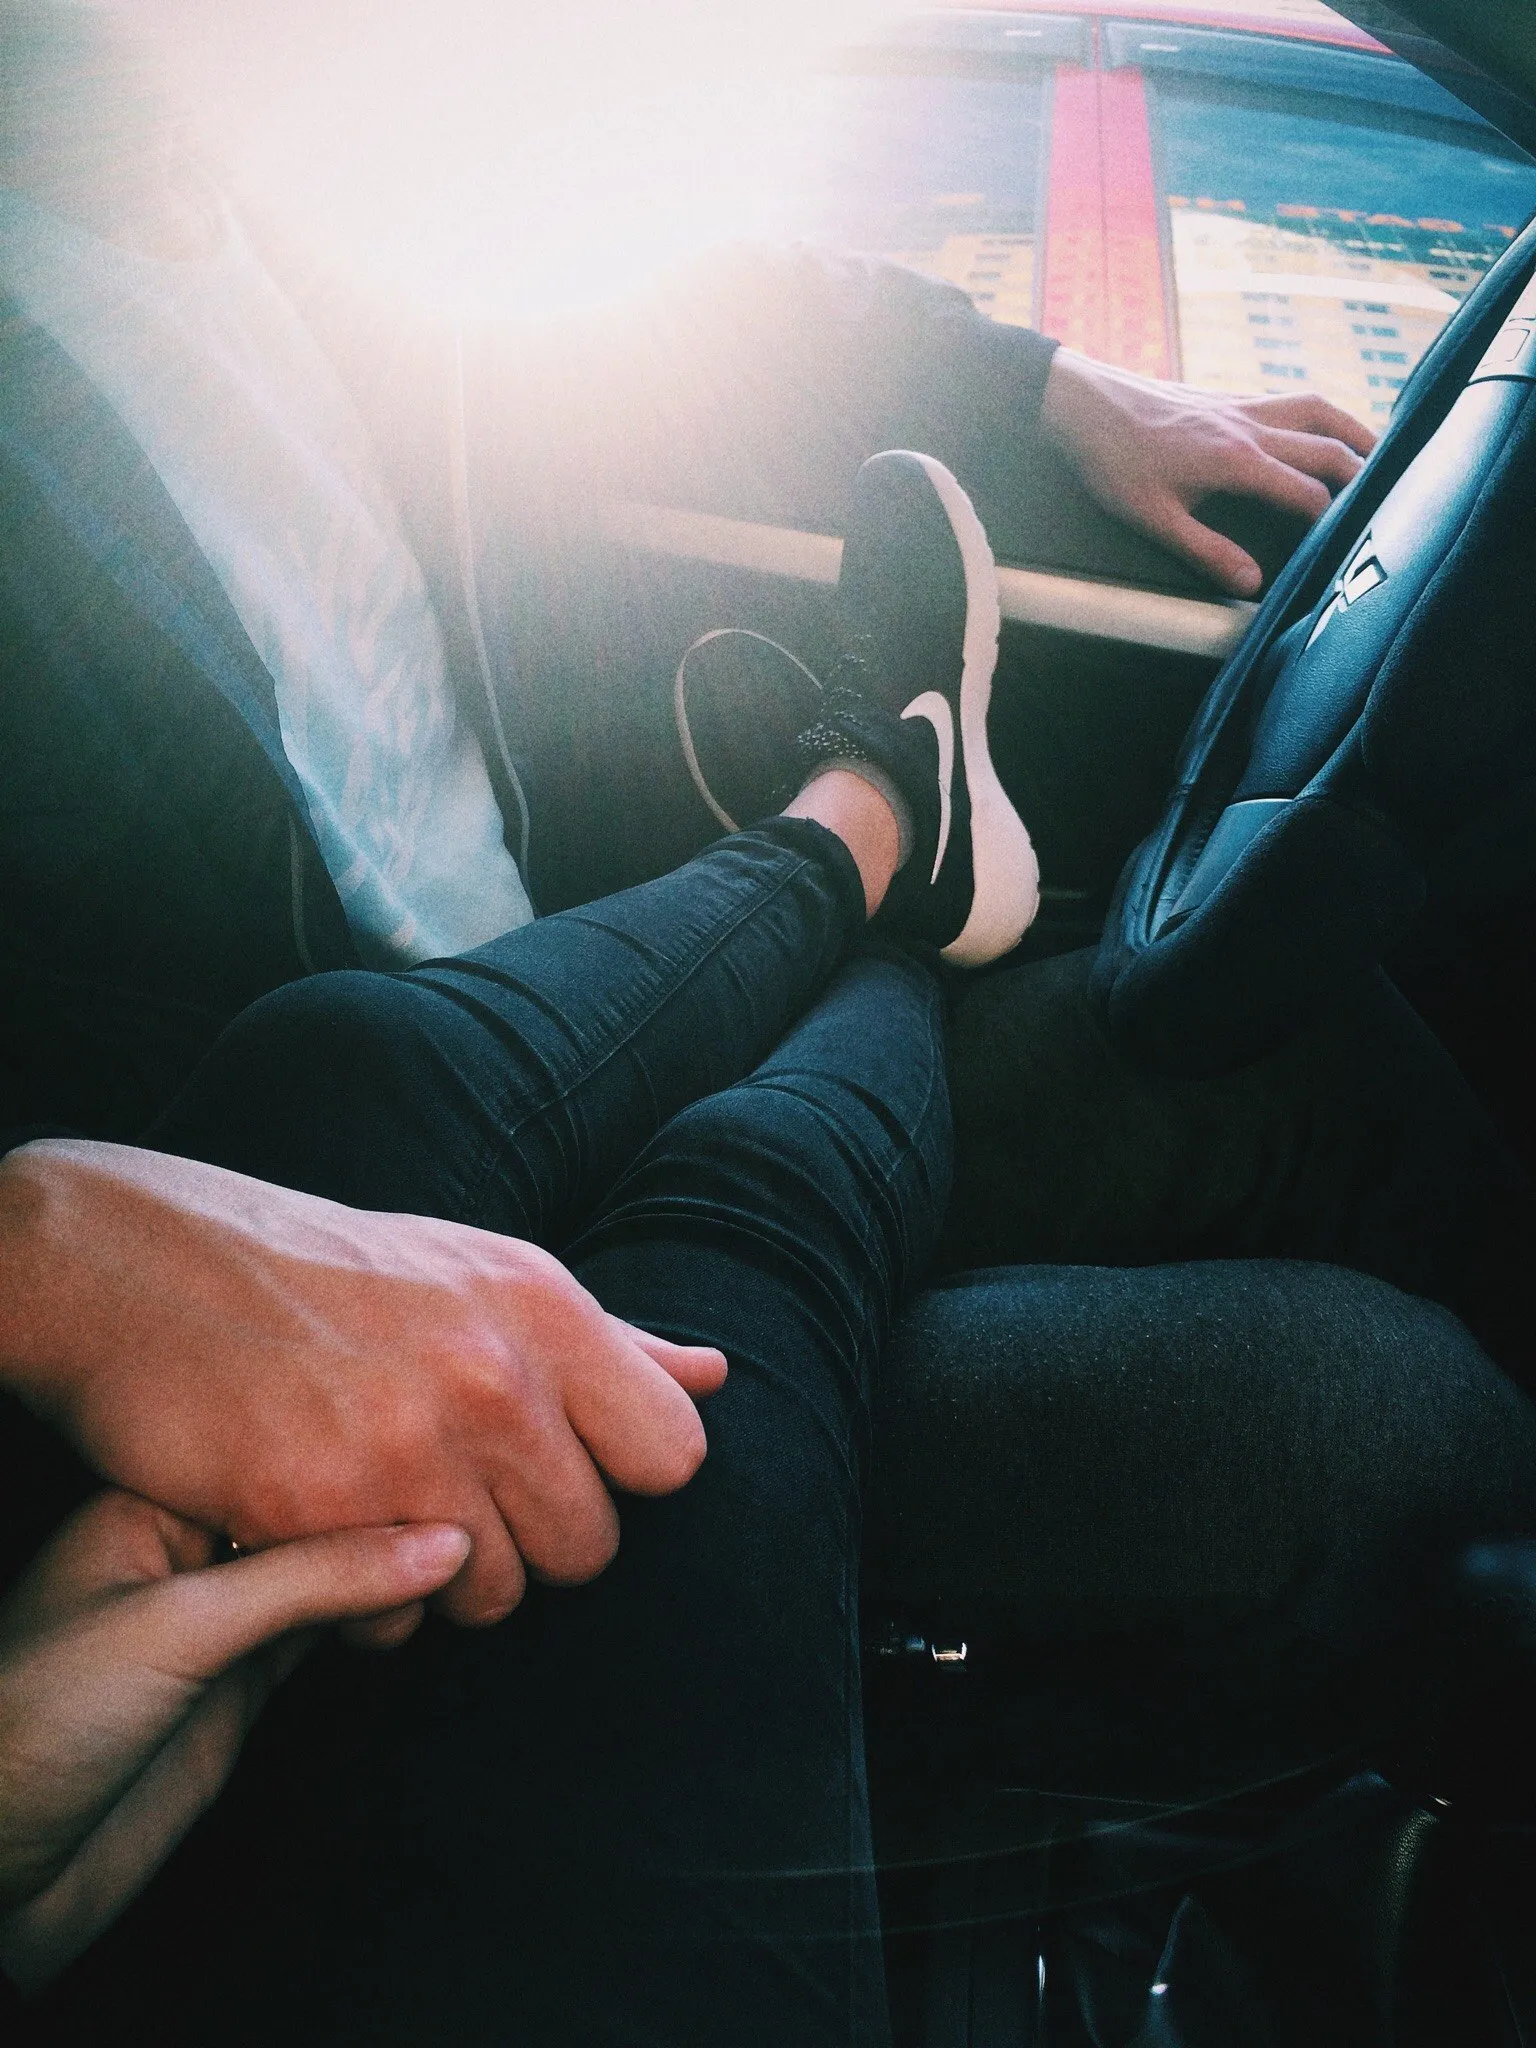 Фото в машине с парнем